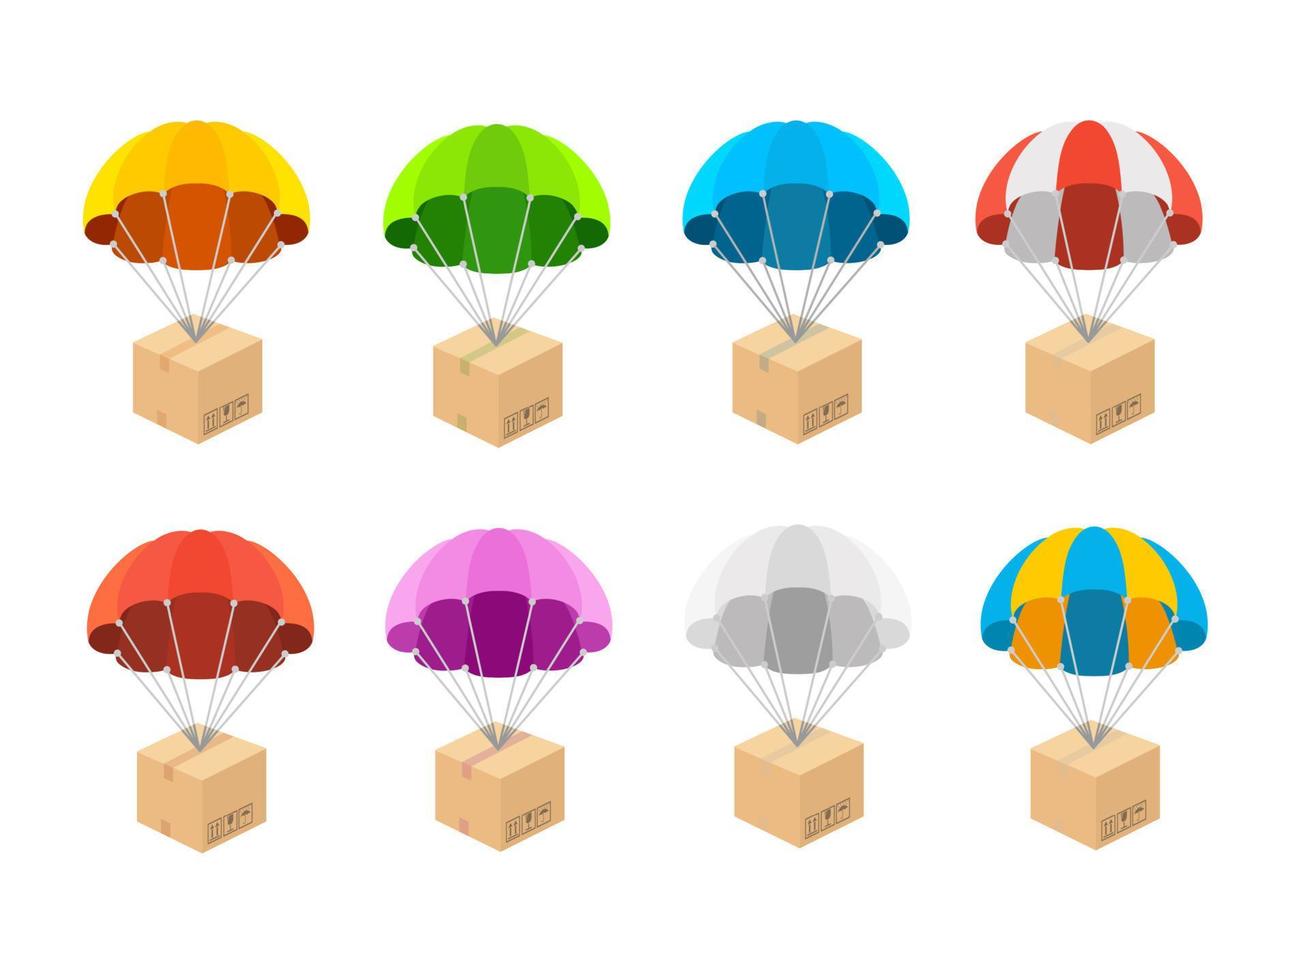 karikaturfarbe unterschiedlicher fallschirm mit gesetzten kastenikonen. Vektor